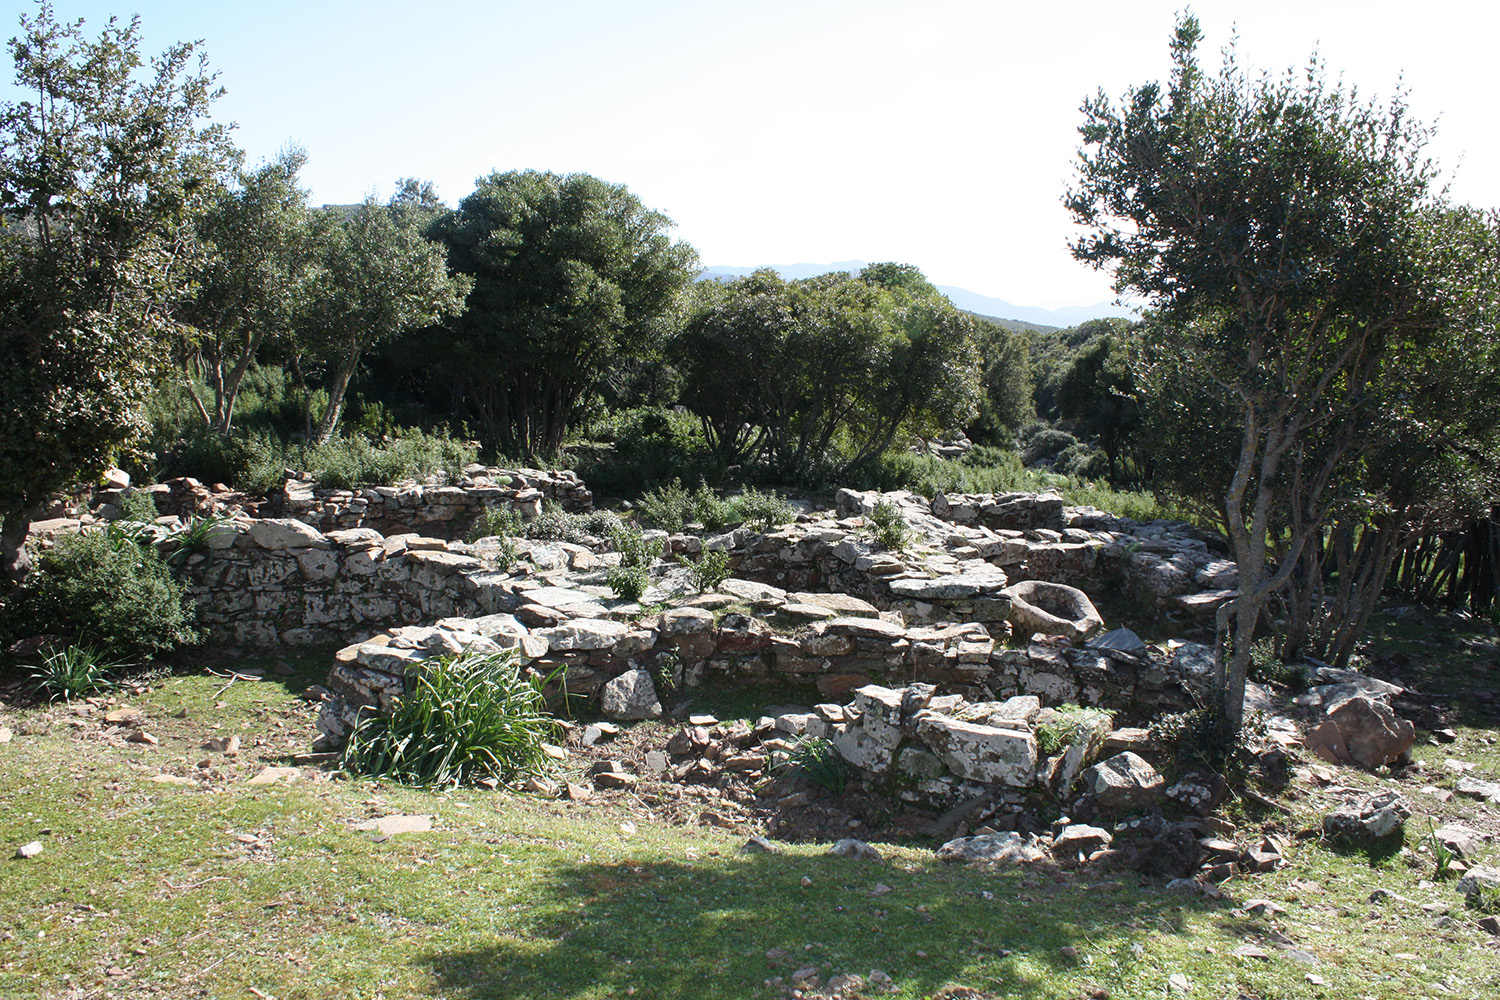 Insediamento cea romana (villaggio/necropoli, insediamento/area ad uso funerario)